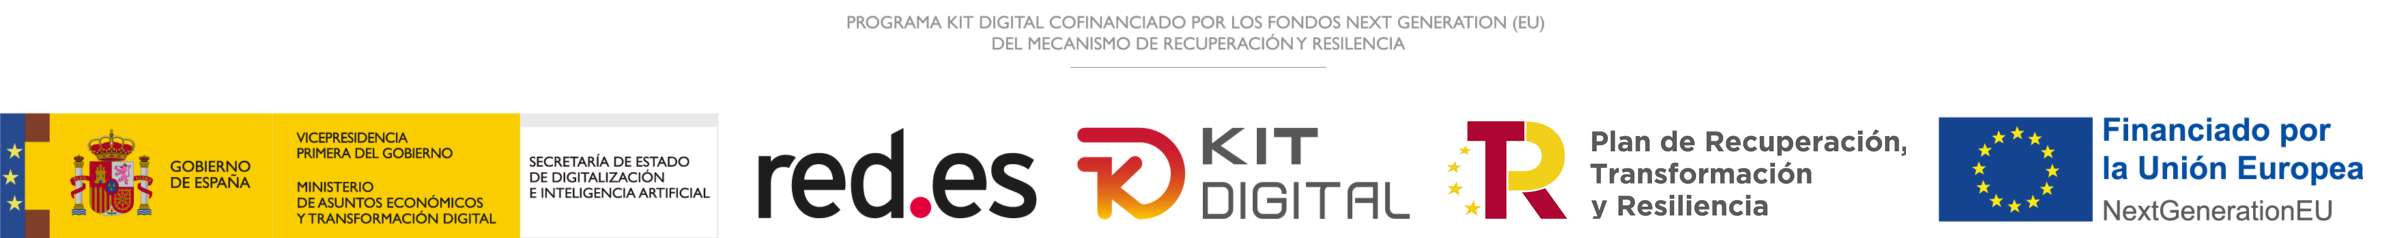 logotipos-ayudas-kit-digital